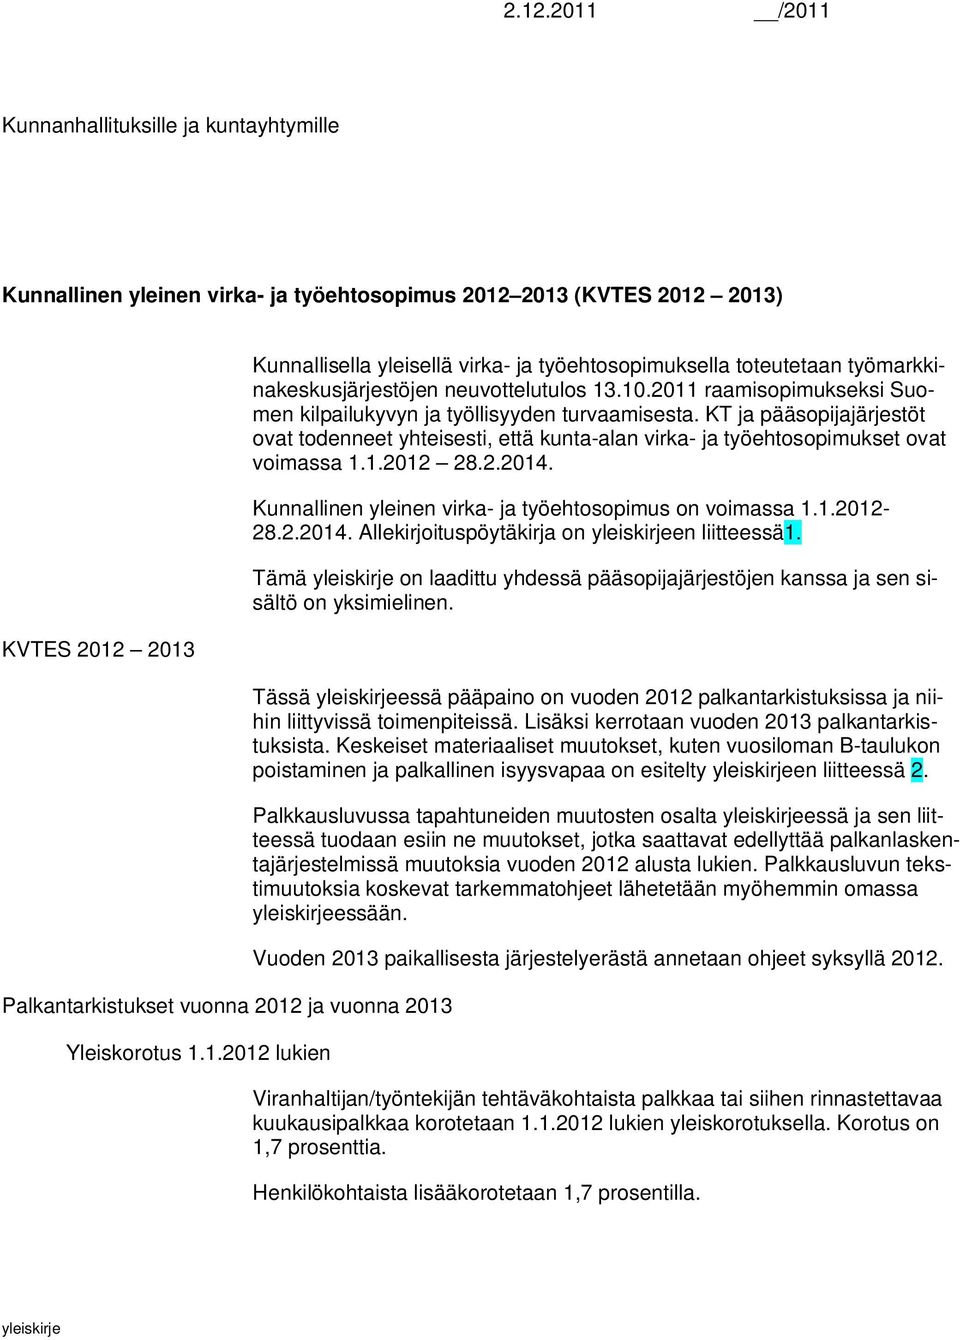 10.2011 raamisopimukseksi Suomen kilpailukyvyn ja työllisyyden turvaamisesta. KT ja pääsopijajärjestöt ovat todenneet yhteisesti, että kunta-alan virka- ja työehtosopimukset ovat voimassa 1.1.2012 28.